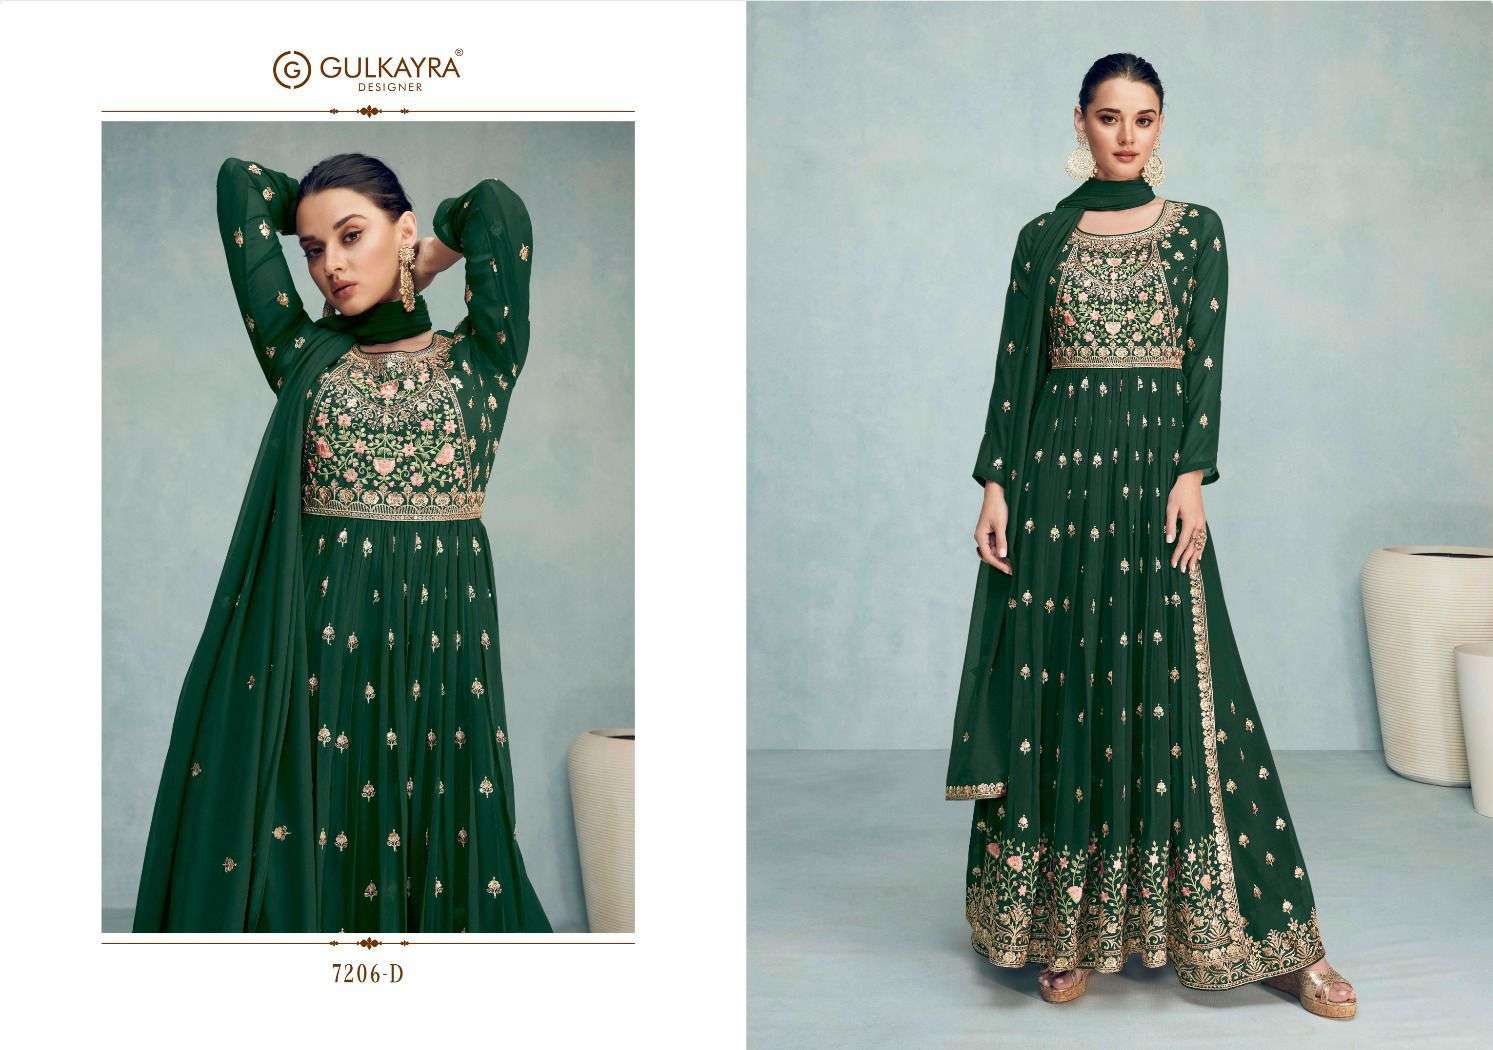 gulkayra designer nayra vol-6 7206 series exclusive designer salwar suits catalogue wholesale price surat